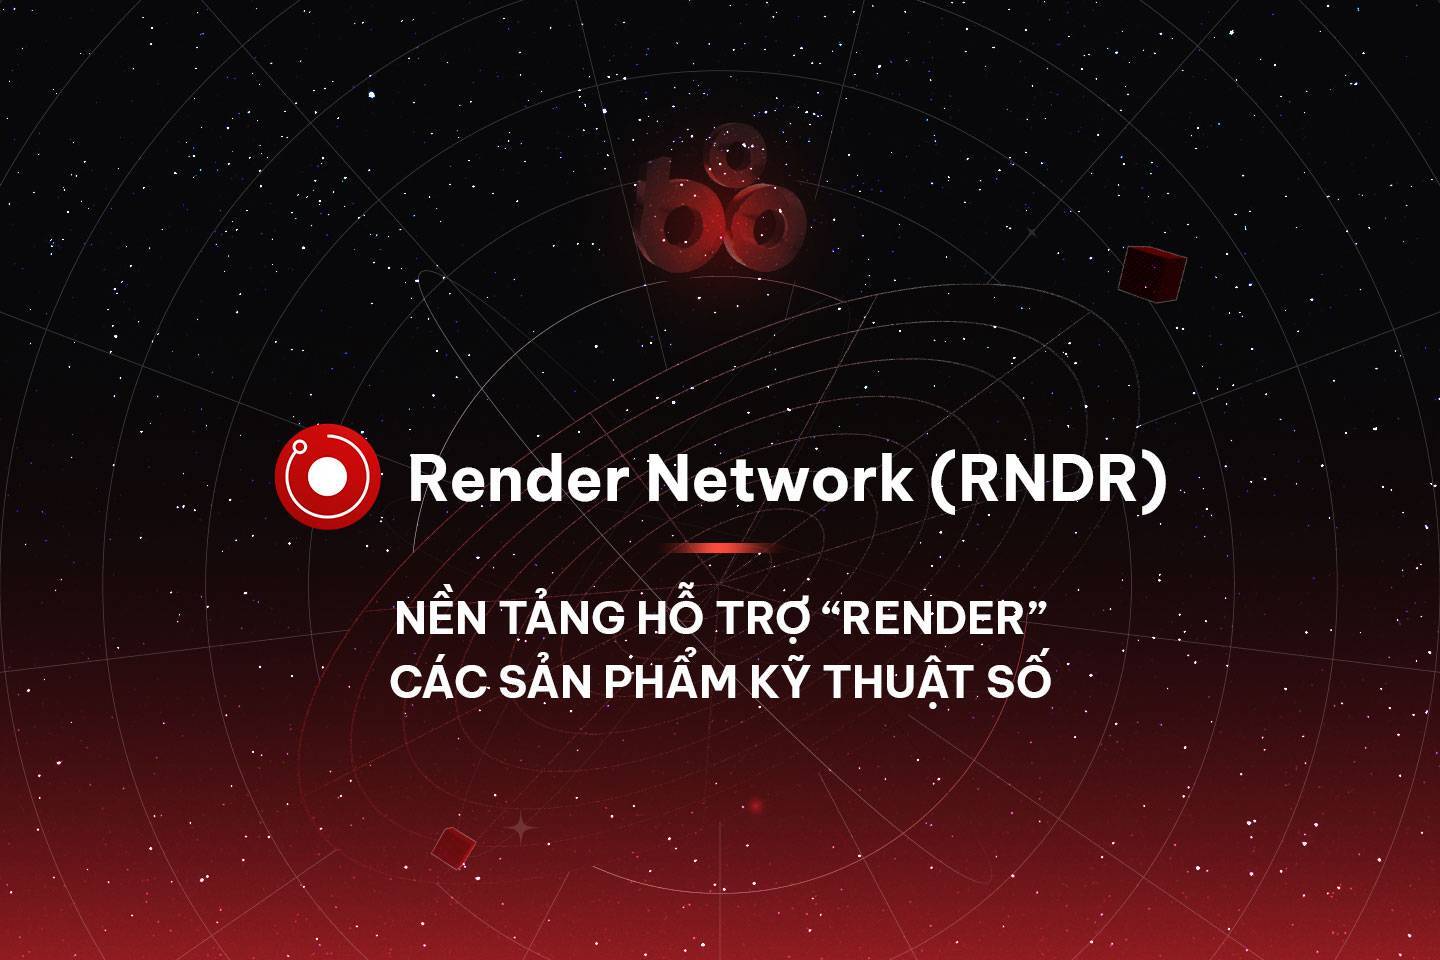 Render Network rndr  Nền Tảng Hỗ Trợ render Các Sản Phẩm Kỹ Thuật Số